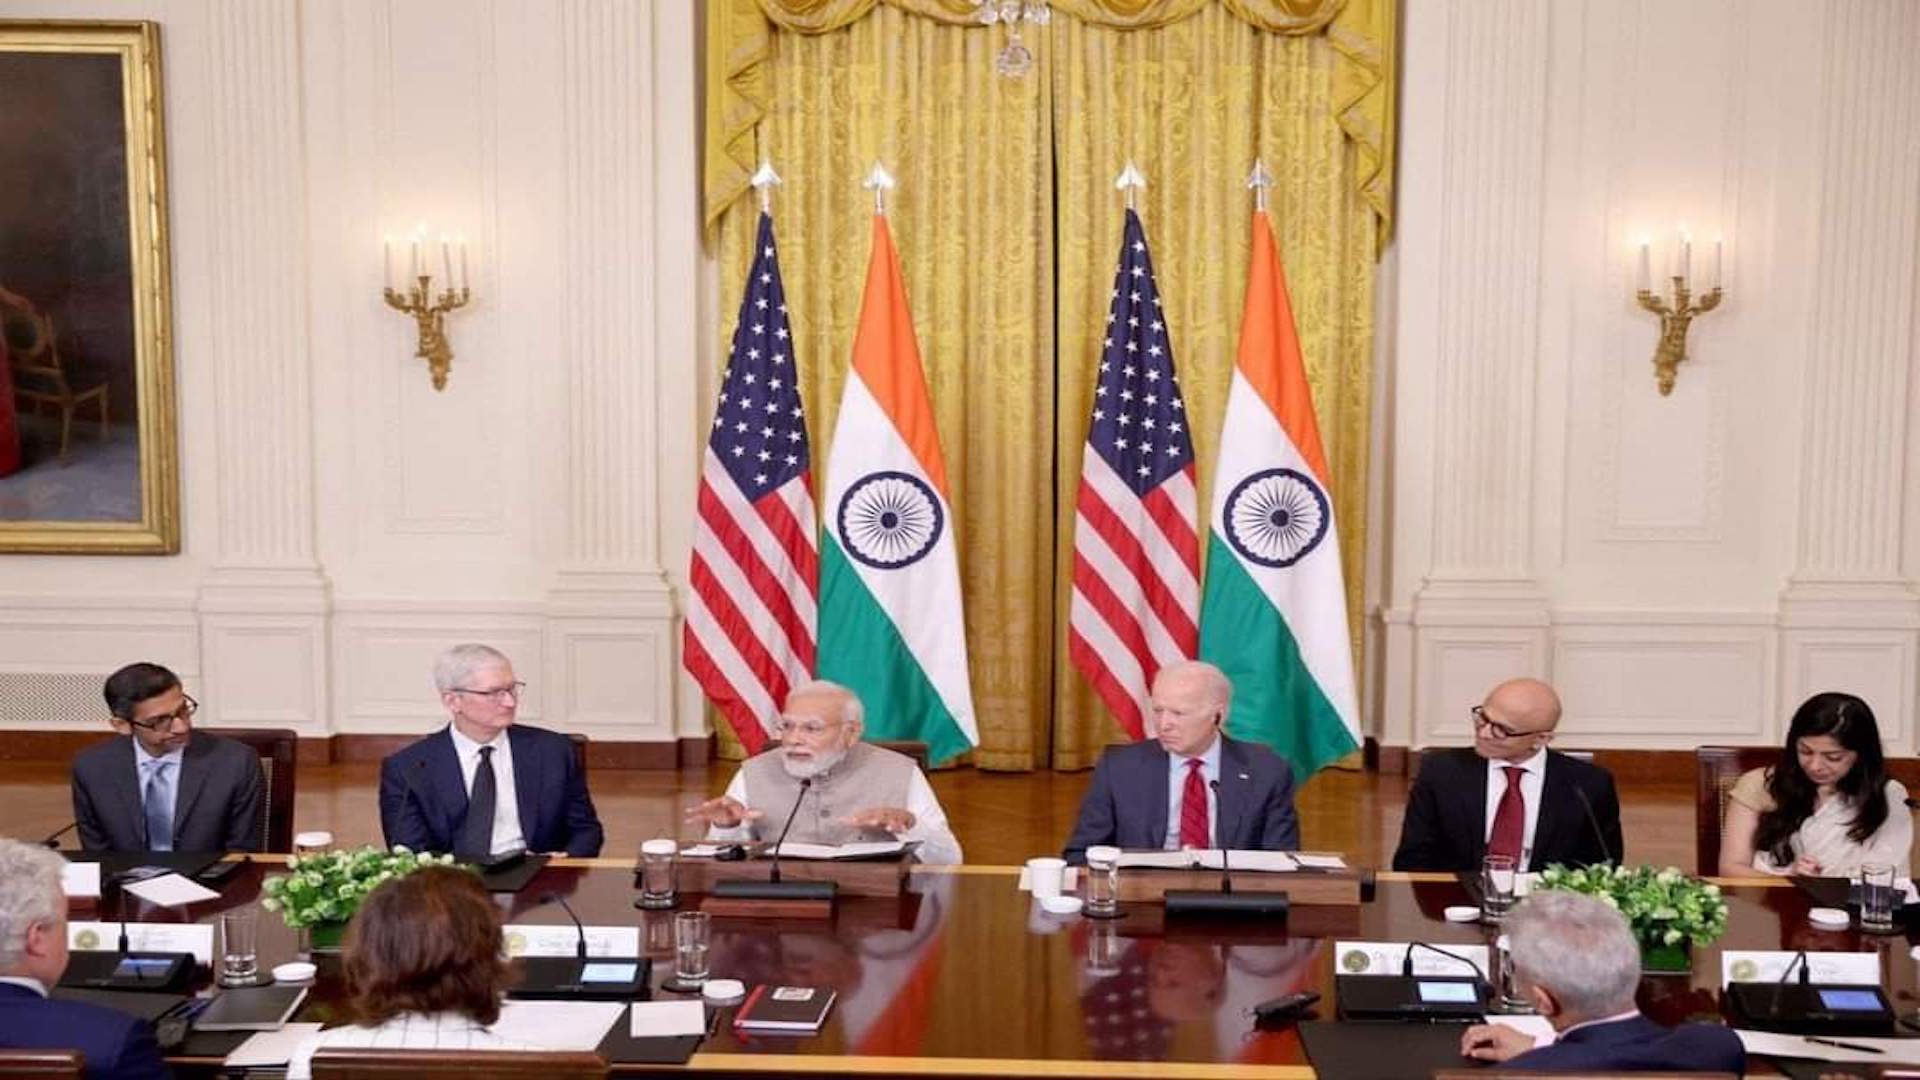 أبل وغوغل ومايكروسوفت الرؤساء التنفيذيون يحضرون عشاء رئيس وزراء الهند في البيت الأبيض